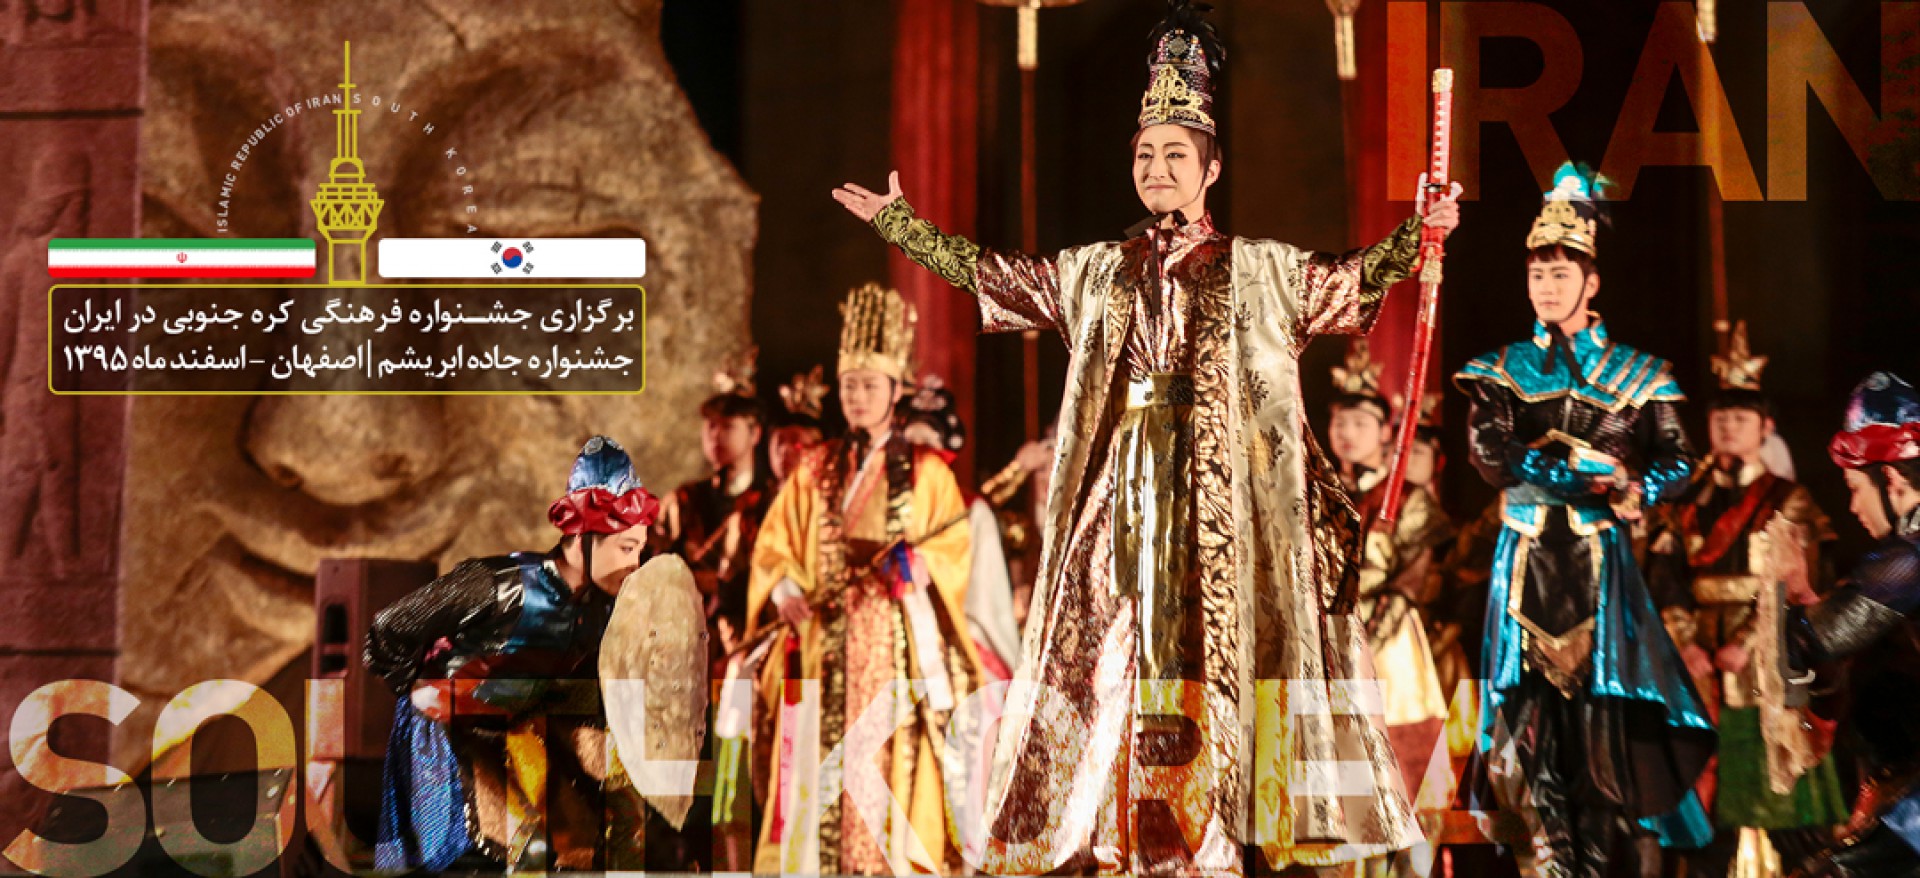 برگزاری جشنواره فرهنگی کره جنوبی در ایران